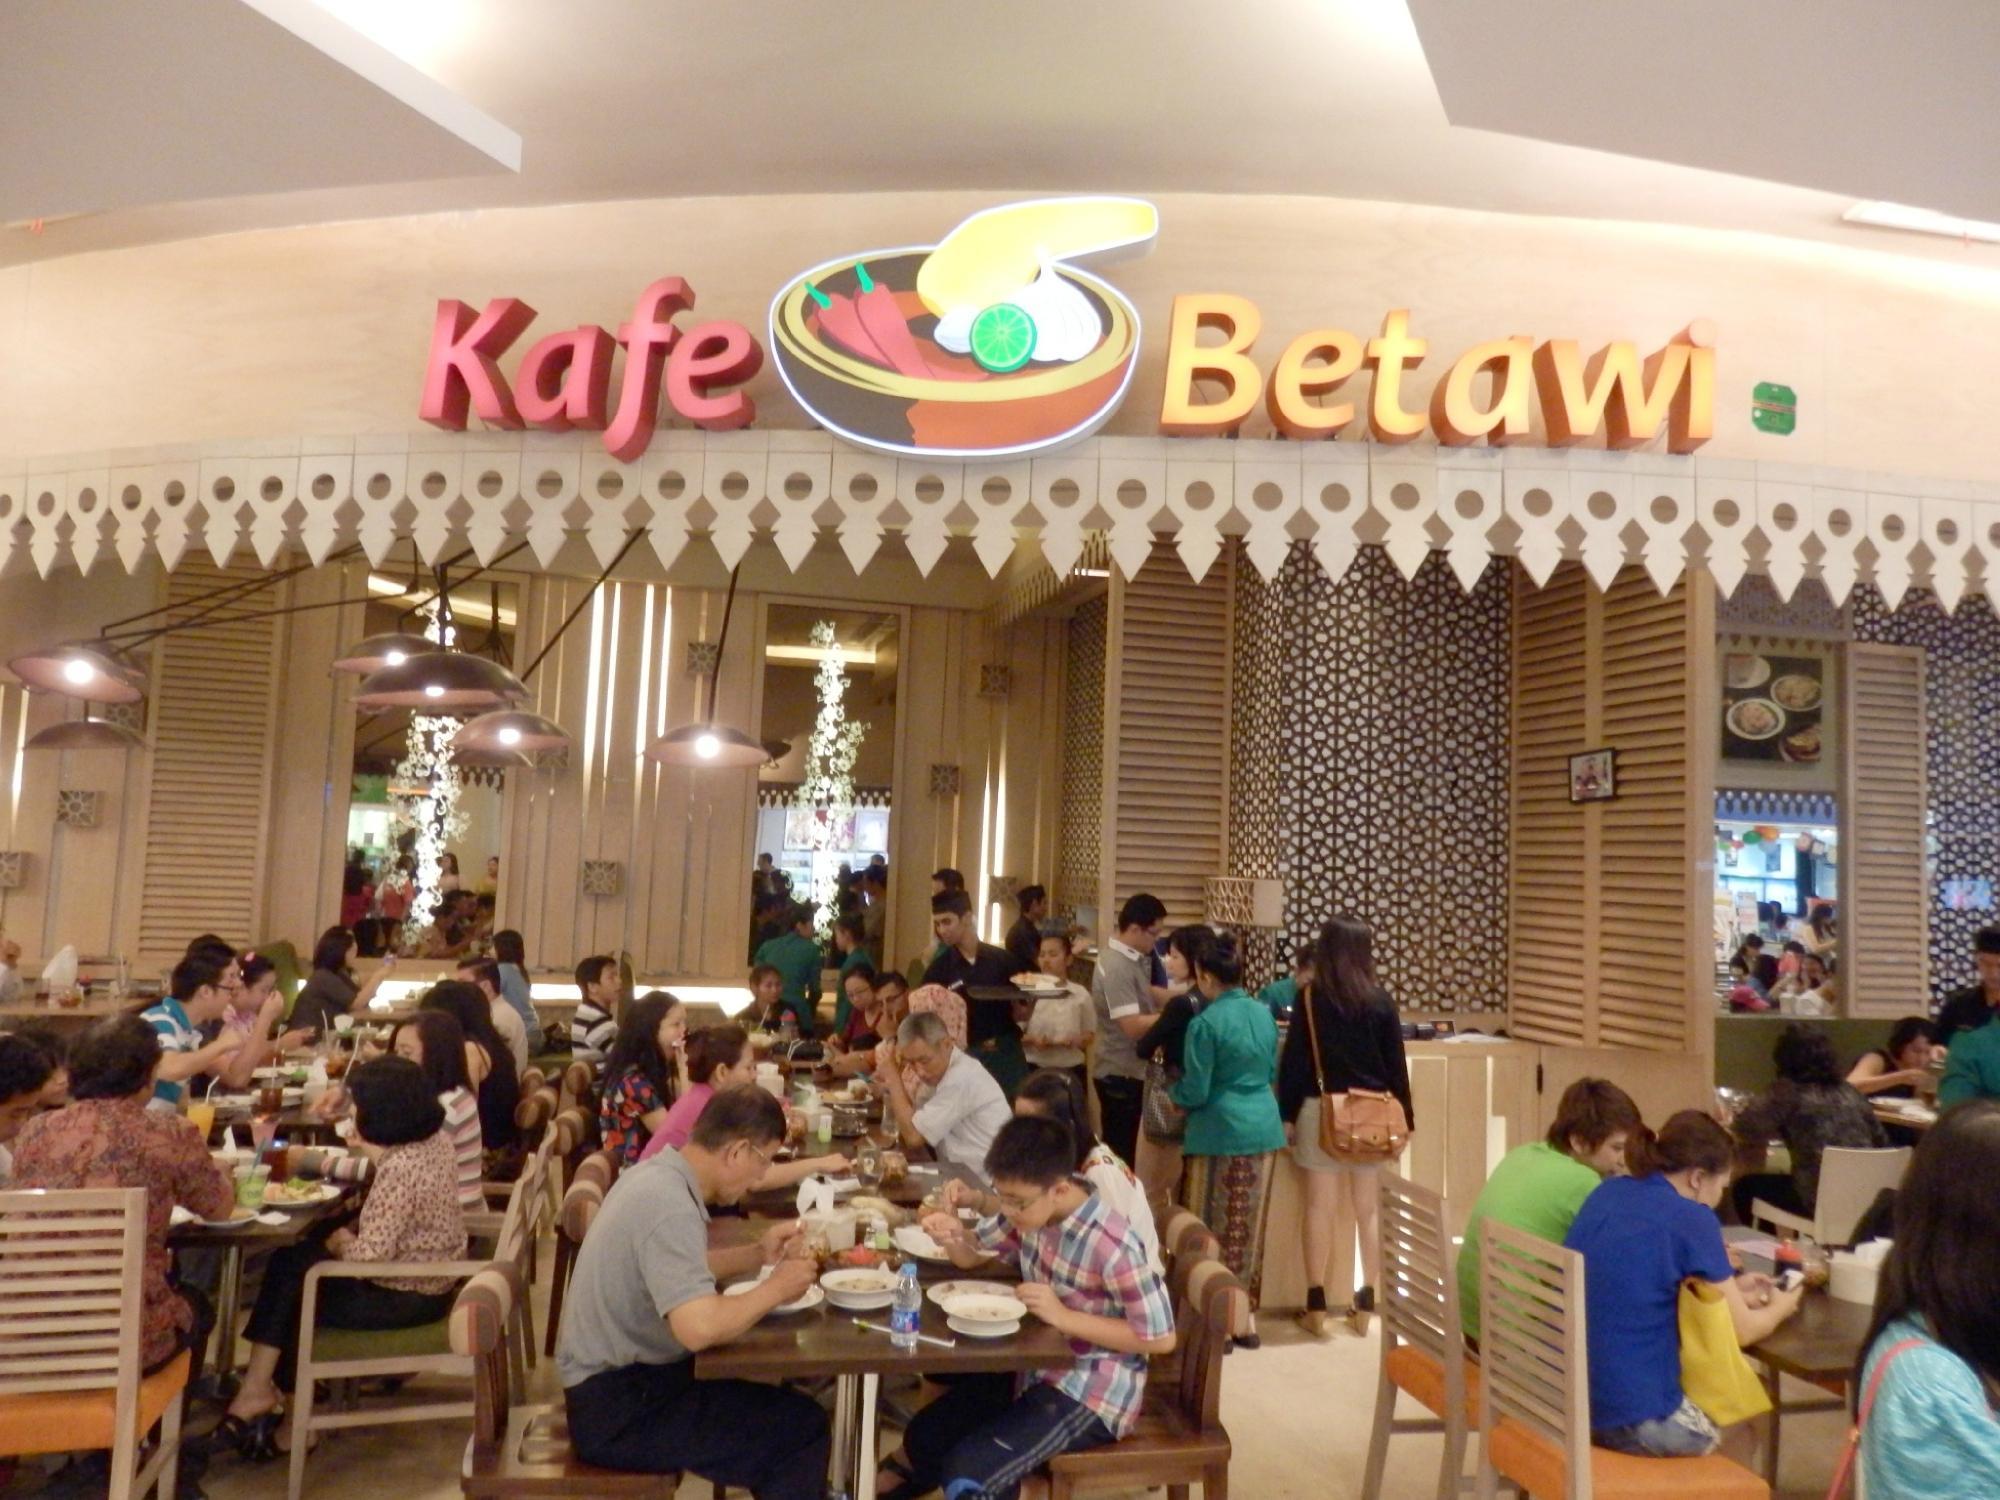 Kafe Betawi